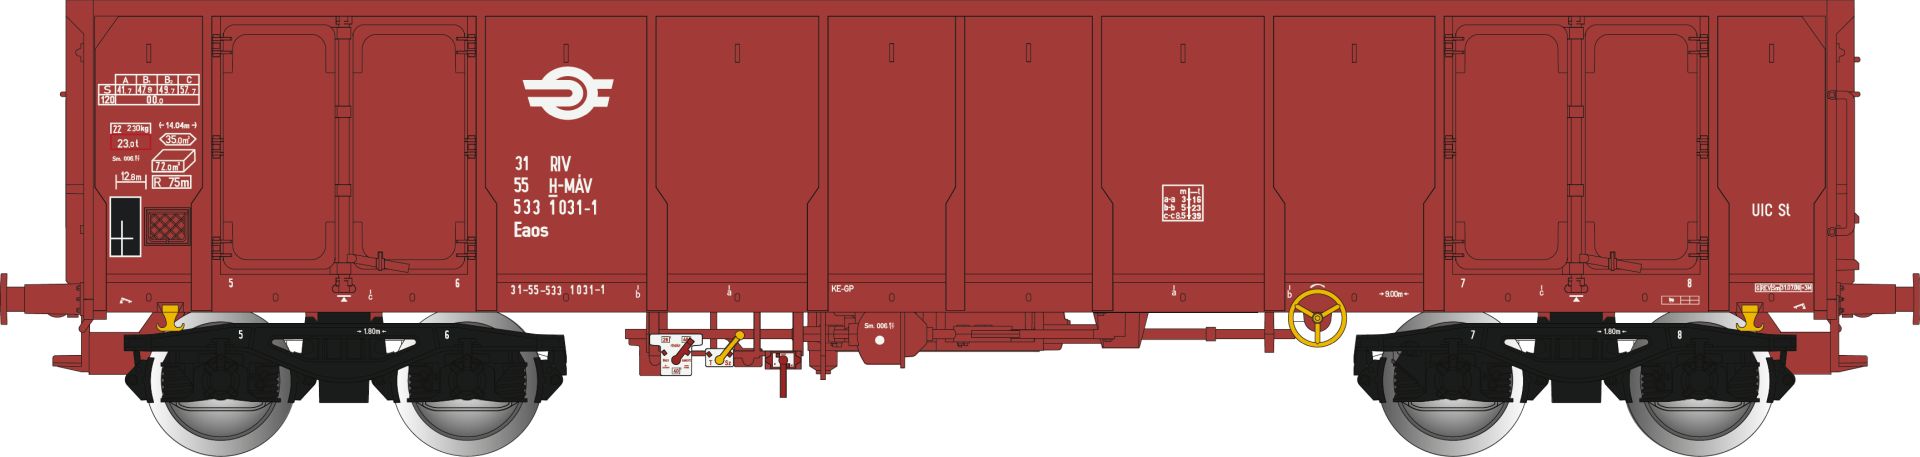 Albert Modell 533005 - Offener Güterwagen Eaos, H-MAV, Ep.VI